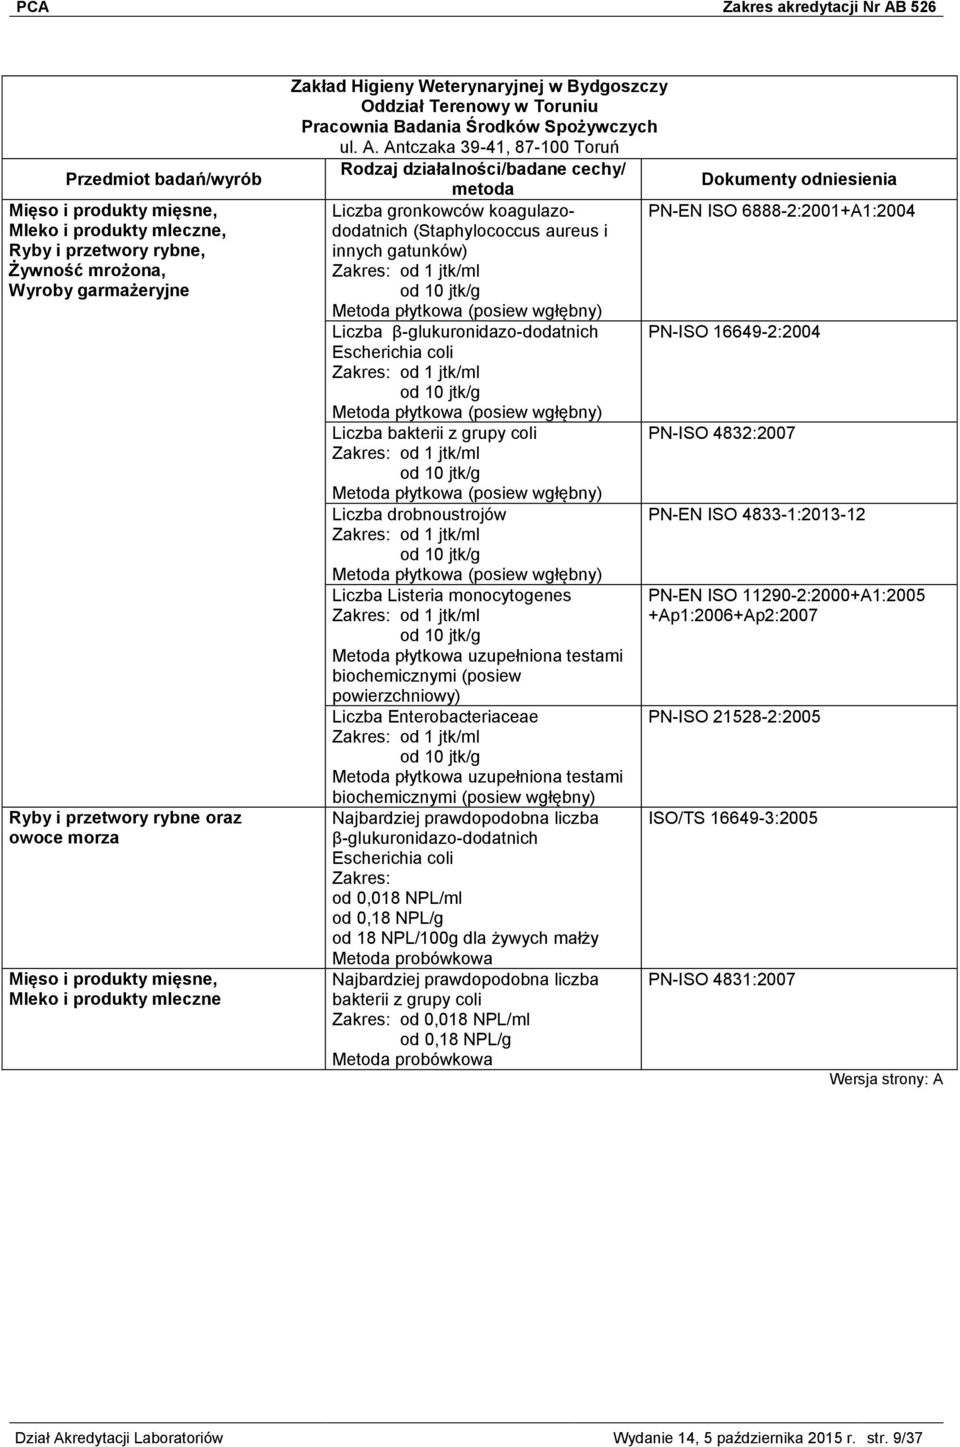 Antczaka 39-41, 87-100 Toruń Liczba gronkowców koagulazododatnich (Staphylococcus aureus i PN-EN ISO 6888-2:2001+A1:2004 innych gatunków) Zakres: od 1 jtk/ml od 10 jtk/g Metoda płytkowa (posiew